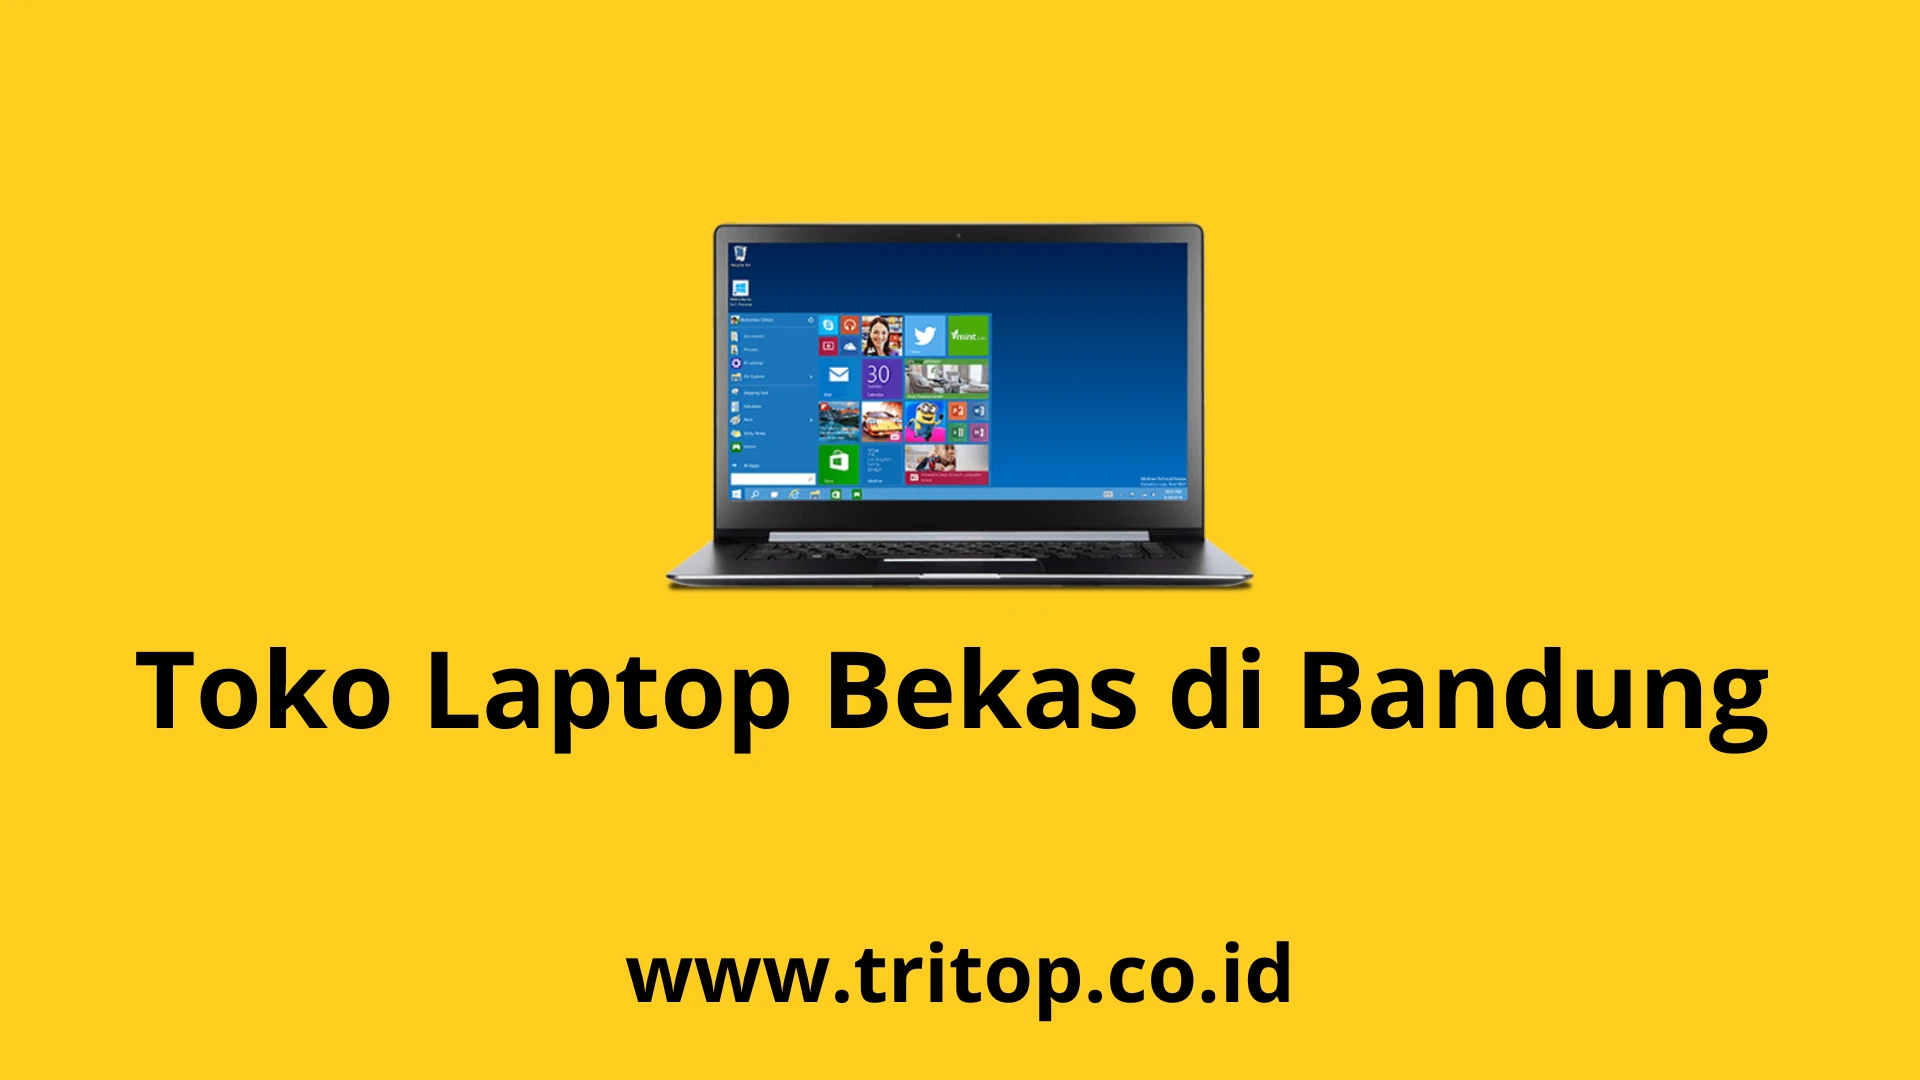 Toko Laptop Bekas di Bandung www.tritop.co.id